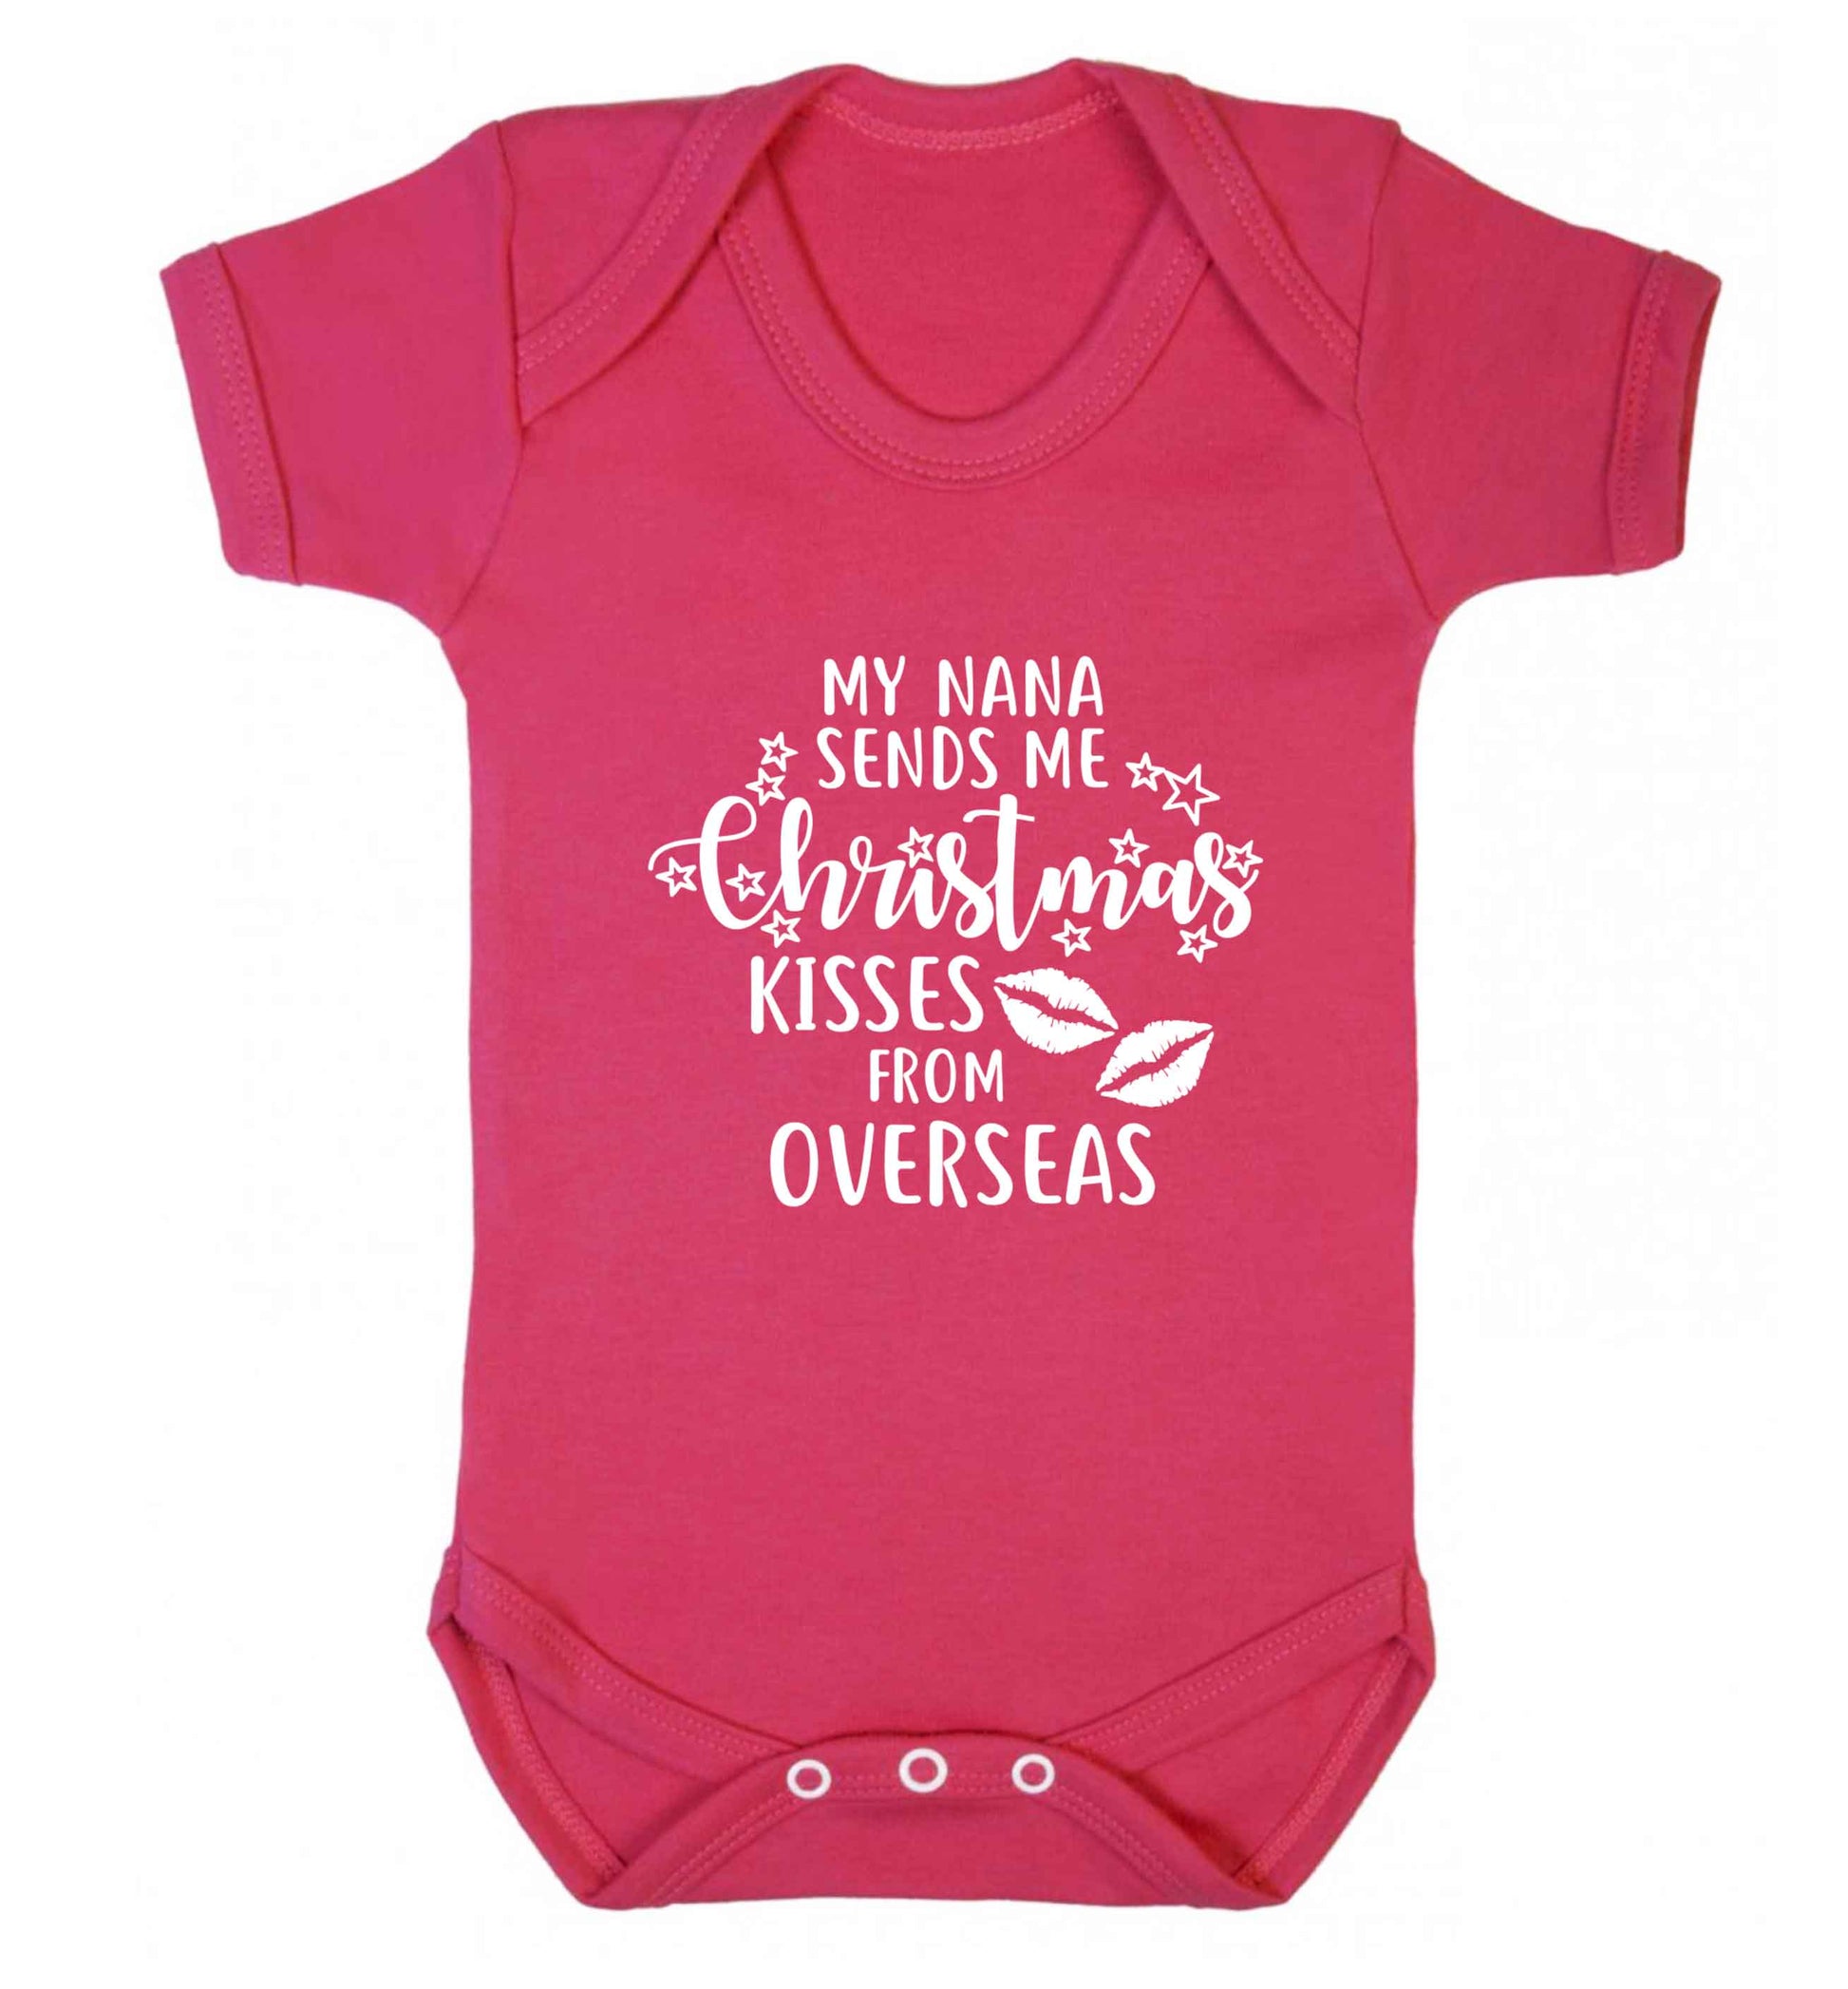 Grandma Christmas Kisses Overseas baby vest dark pink 18-24 months